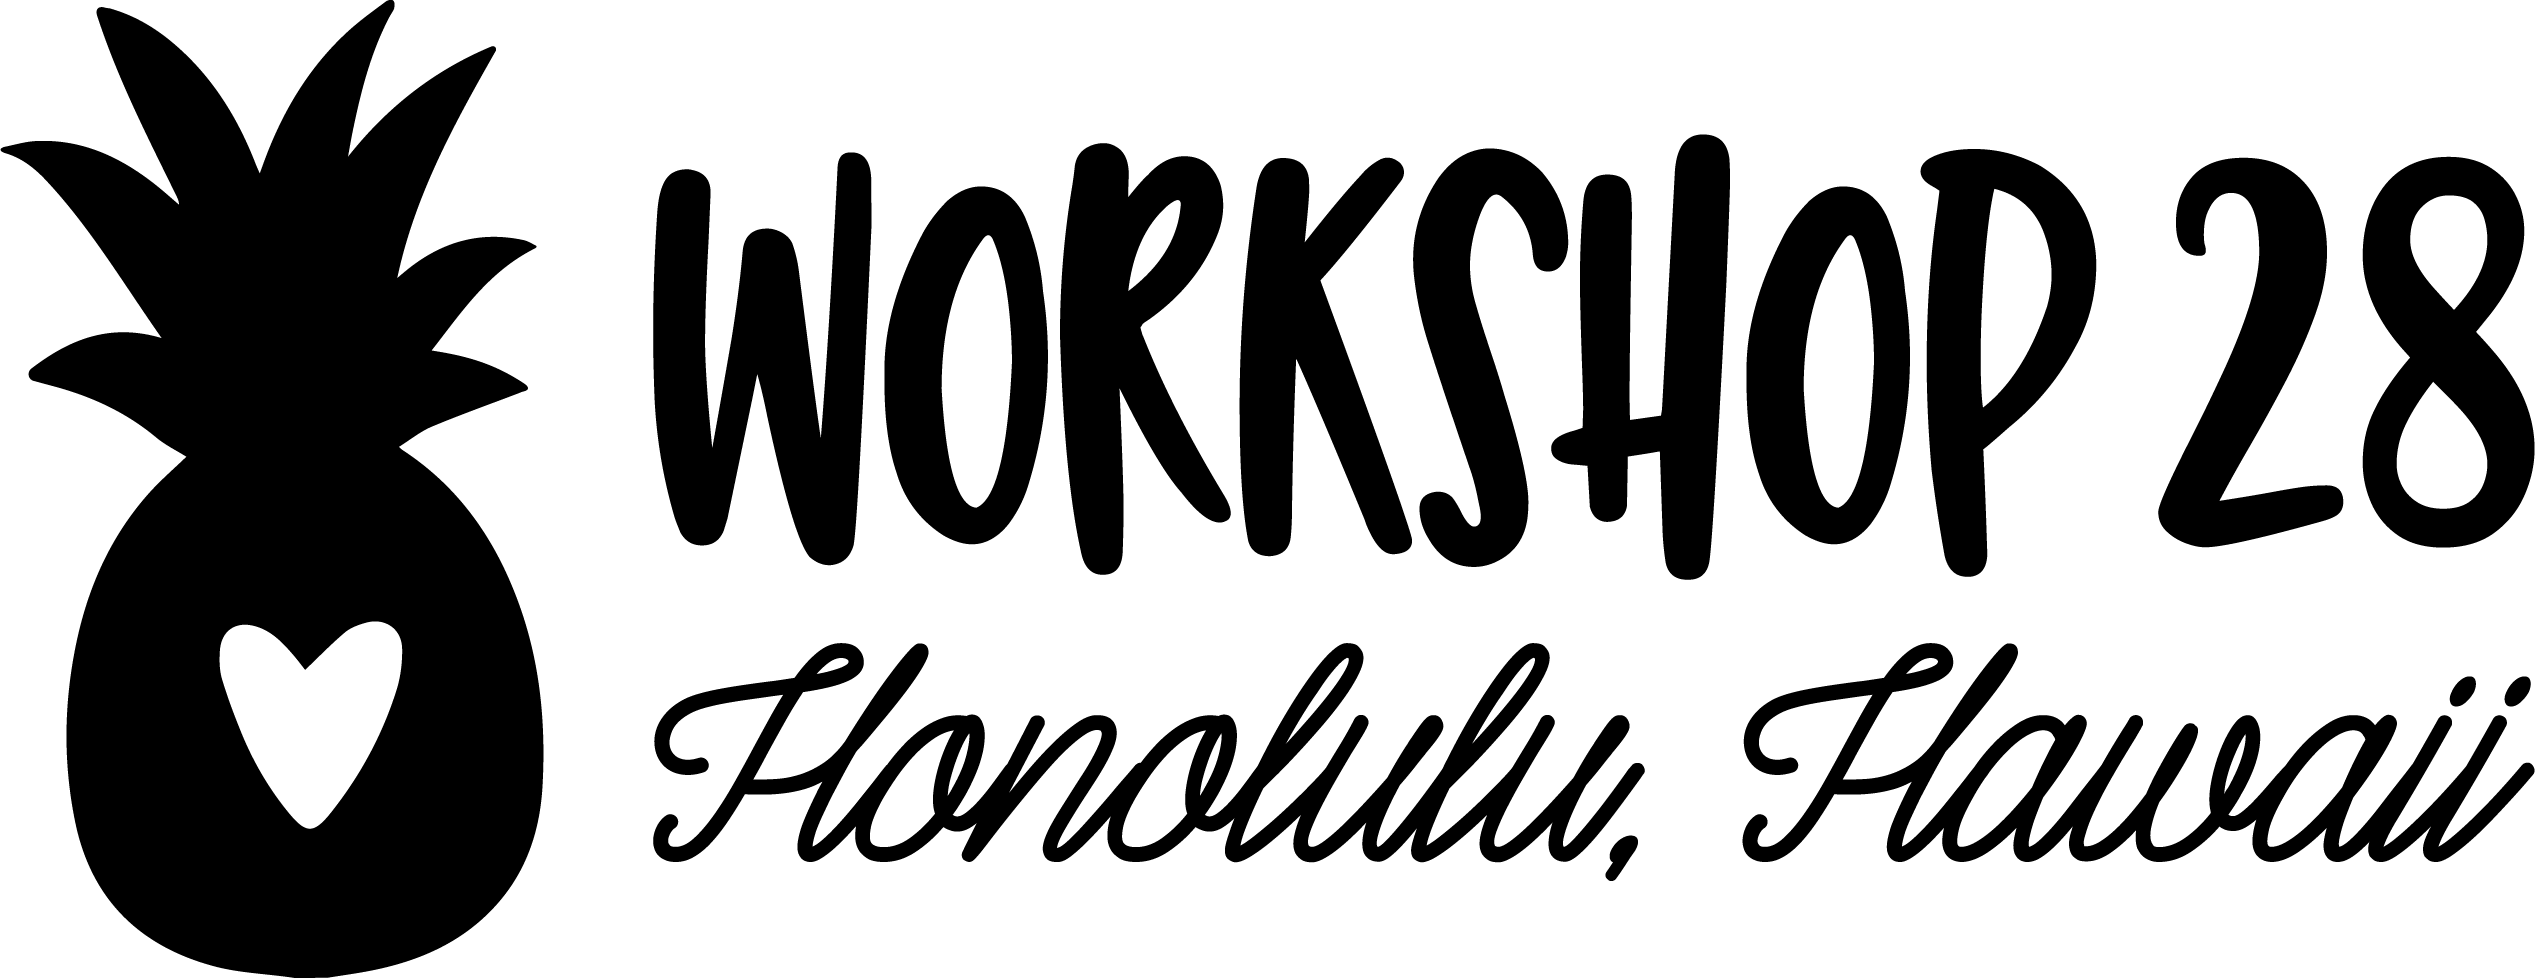 워크샵 28 (Workshop 28) Logo